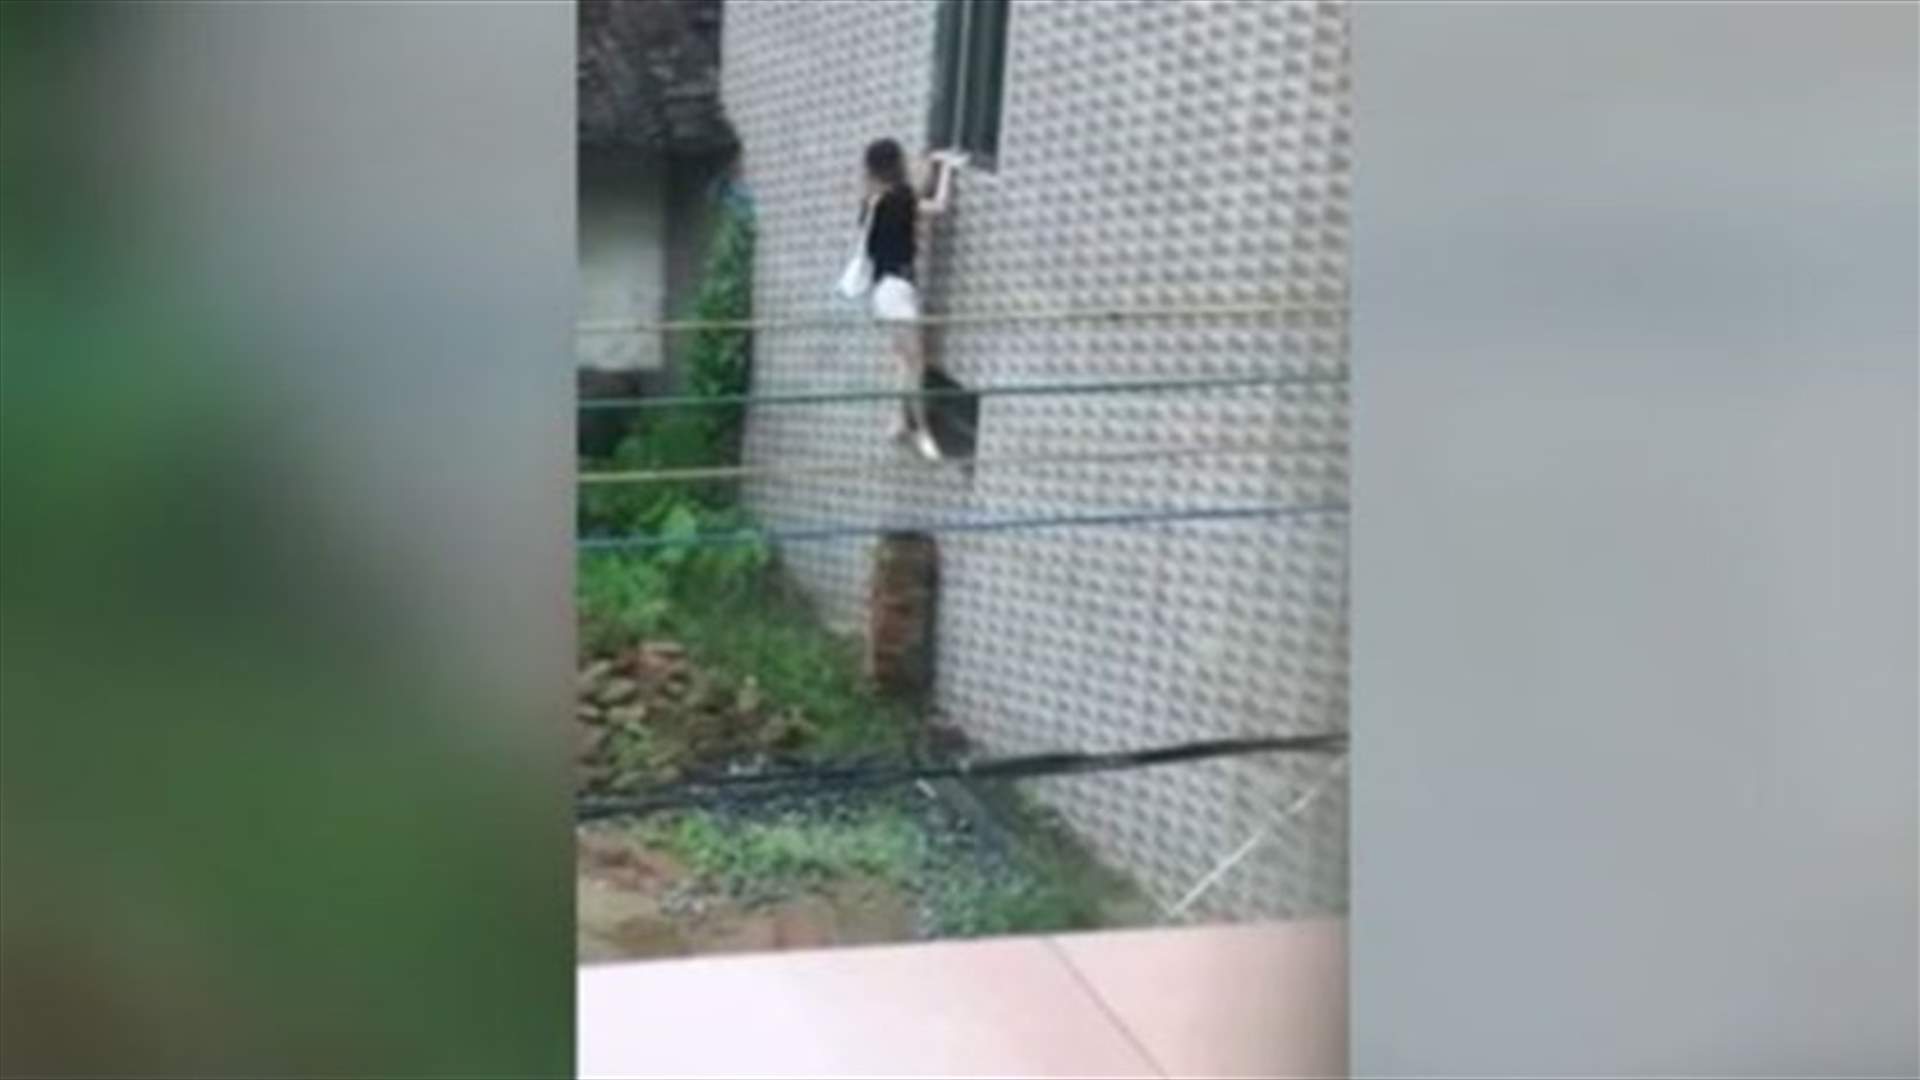 بالفيديو: حاولت دخول منزلها عبر النافذة... والنتيجة كانت مؤلمة!